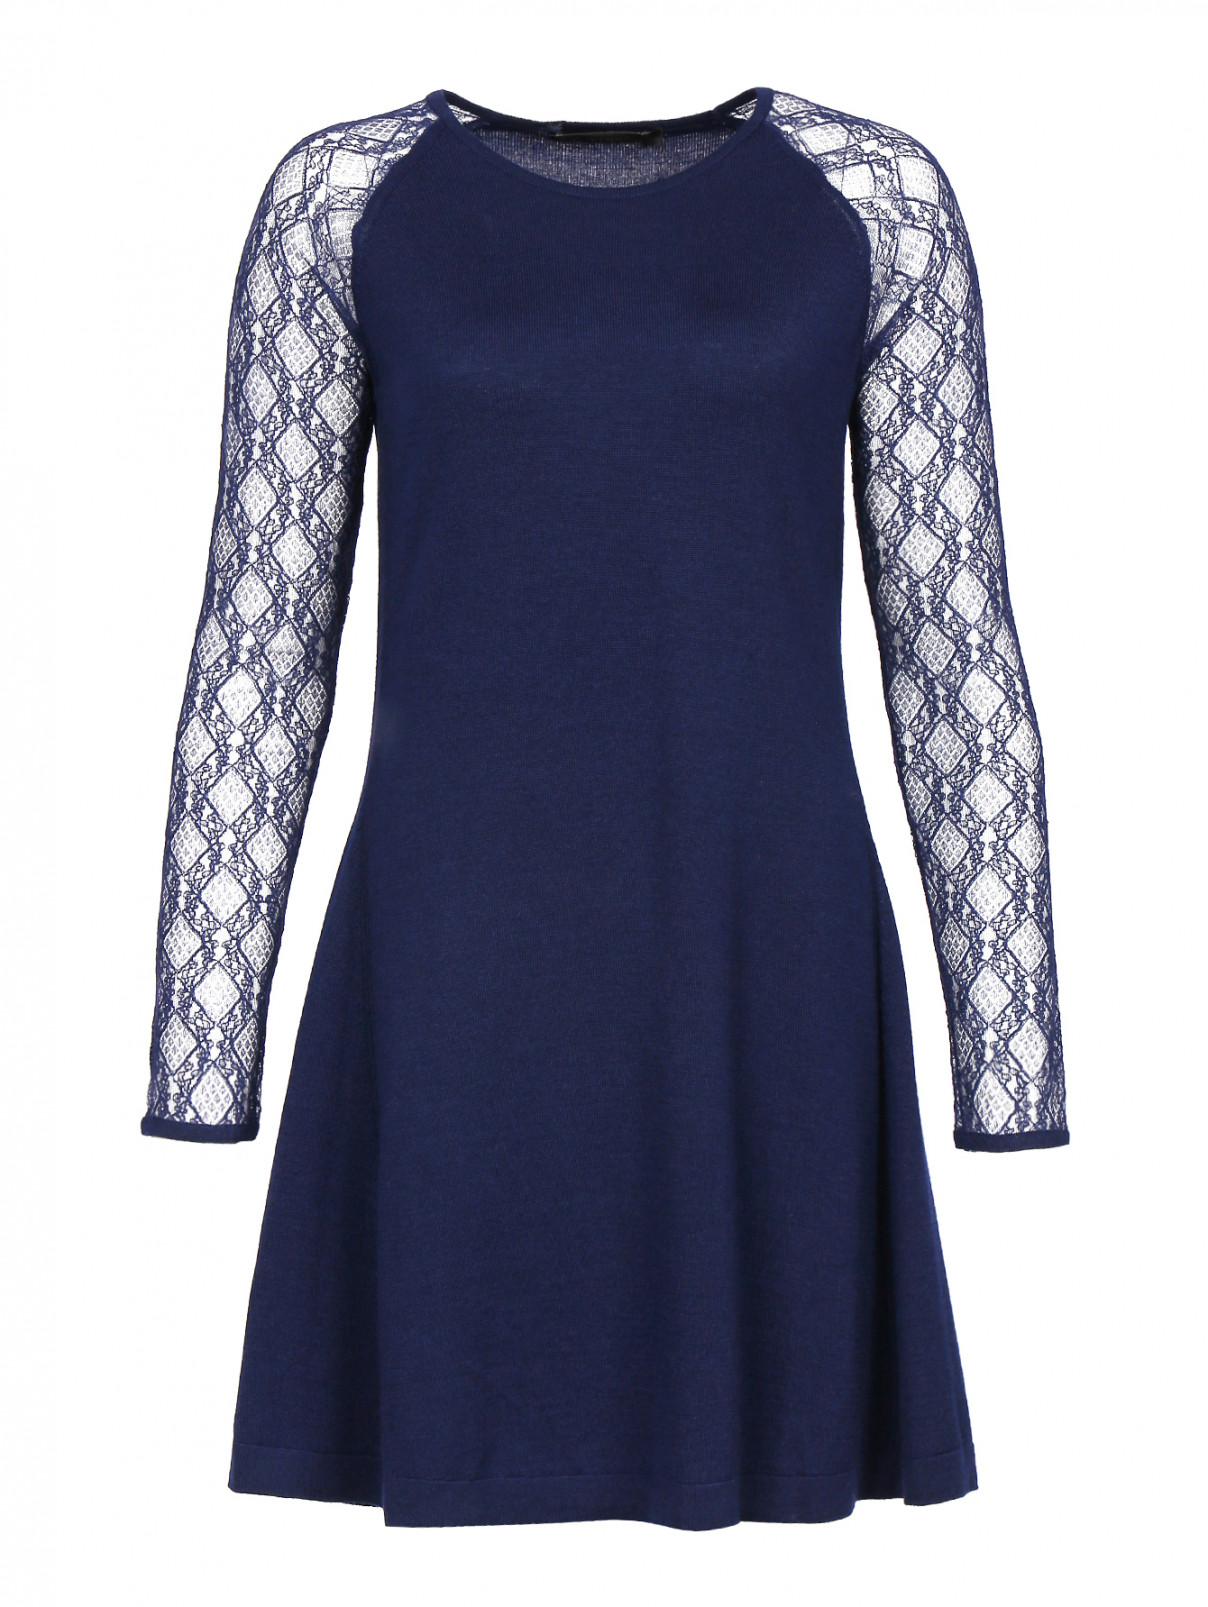 Трикотажное платье из шерсти, шелка и кашемира с рукавами из кружева Versace 1969  –  Общий вид  – Цвет:  Синий